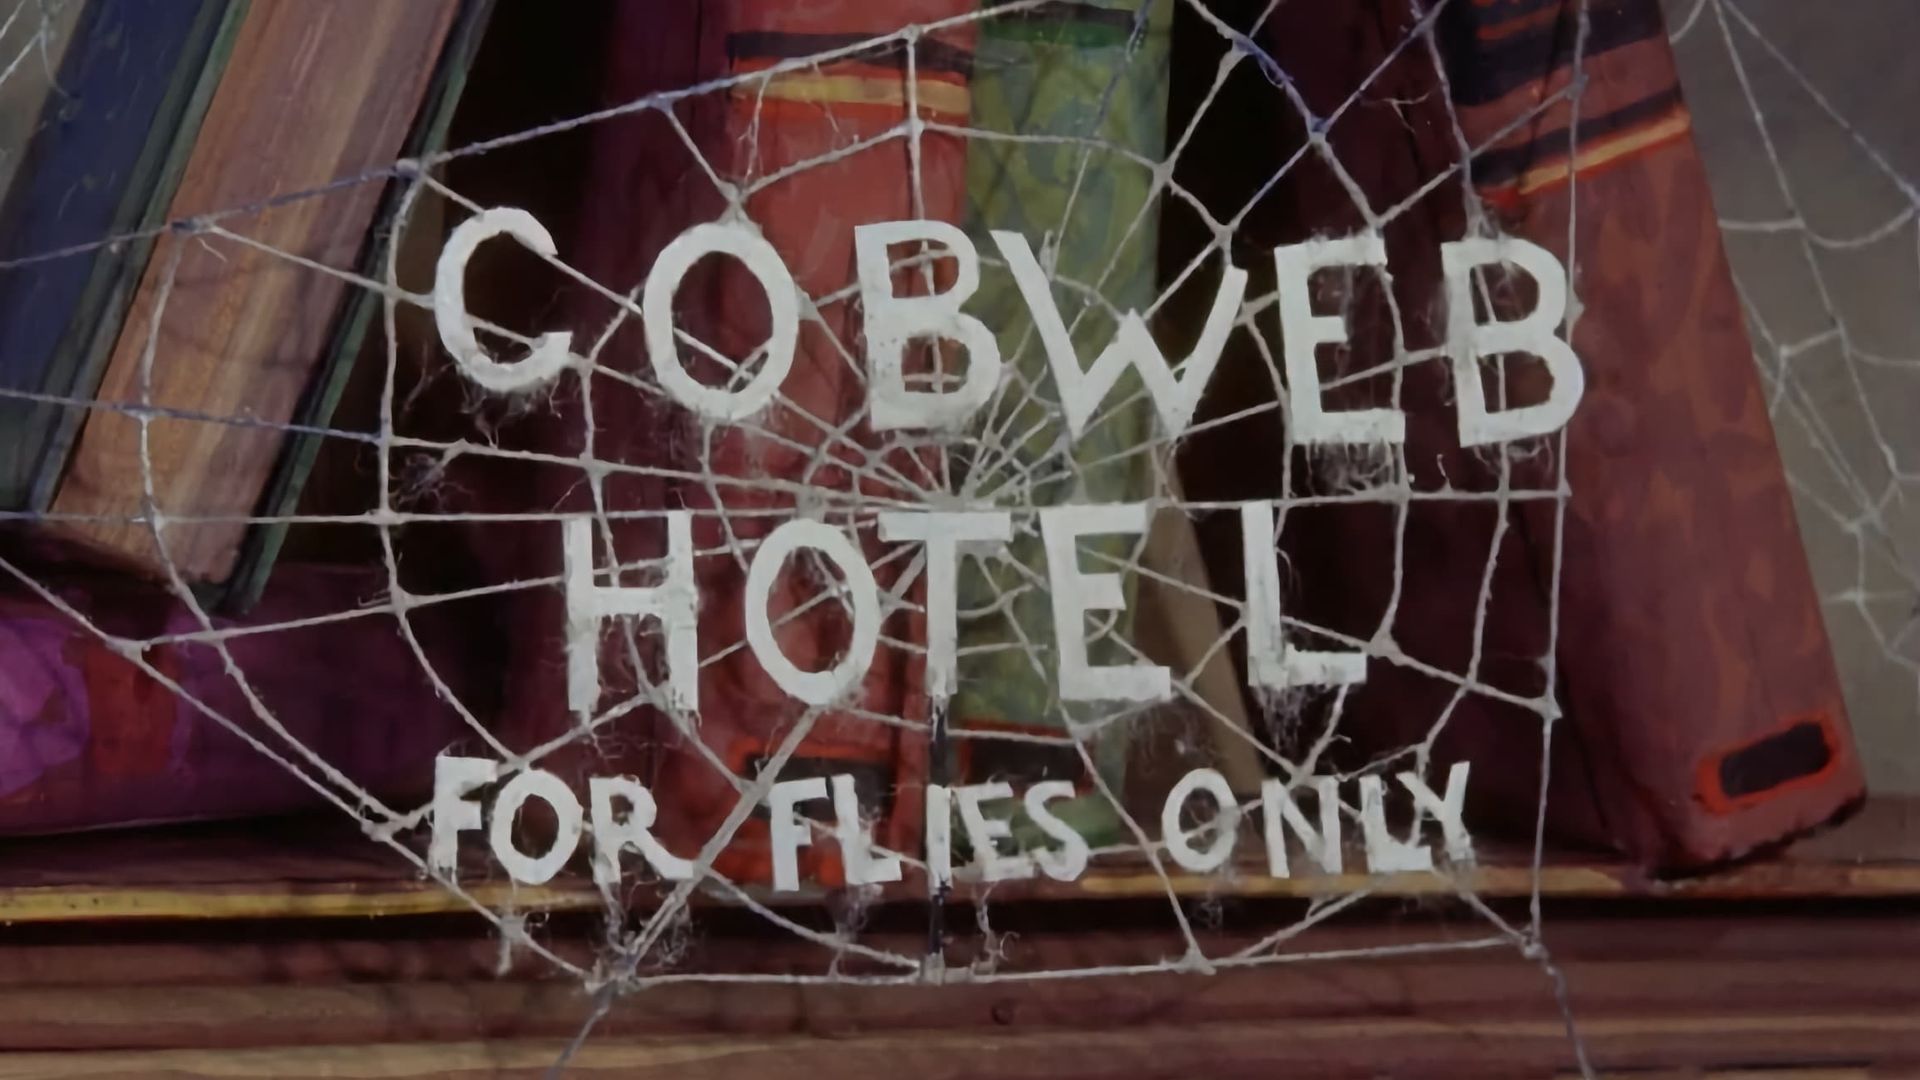 The Cobweb Hotel background